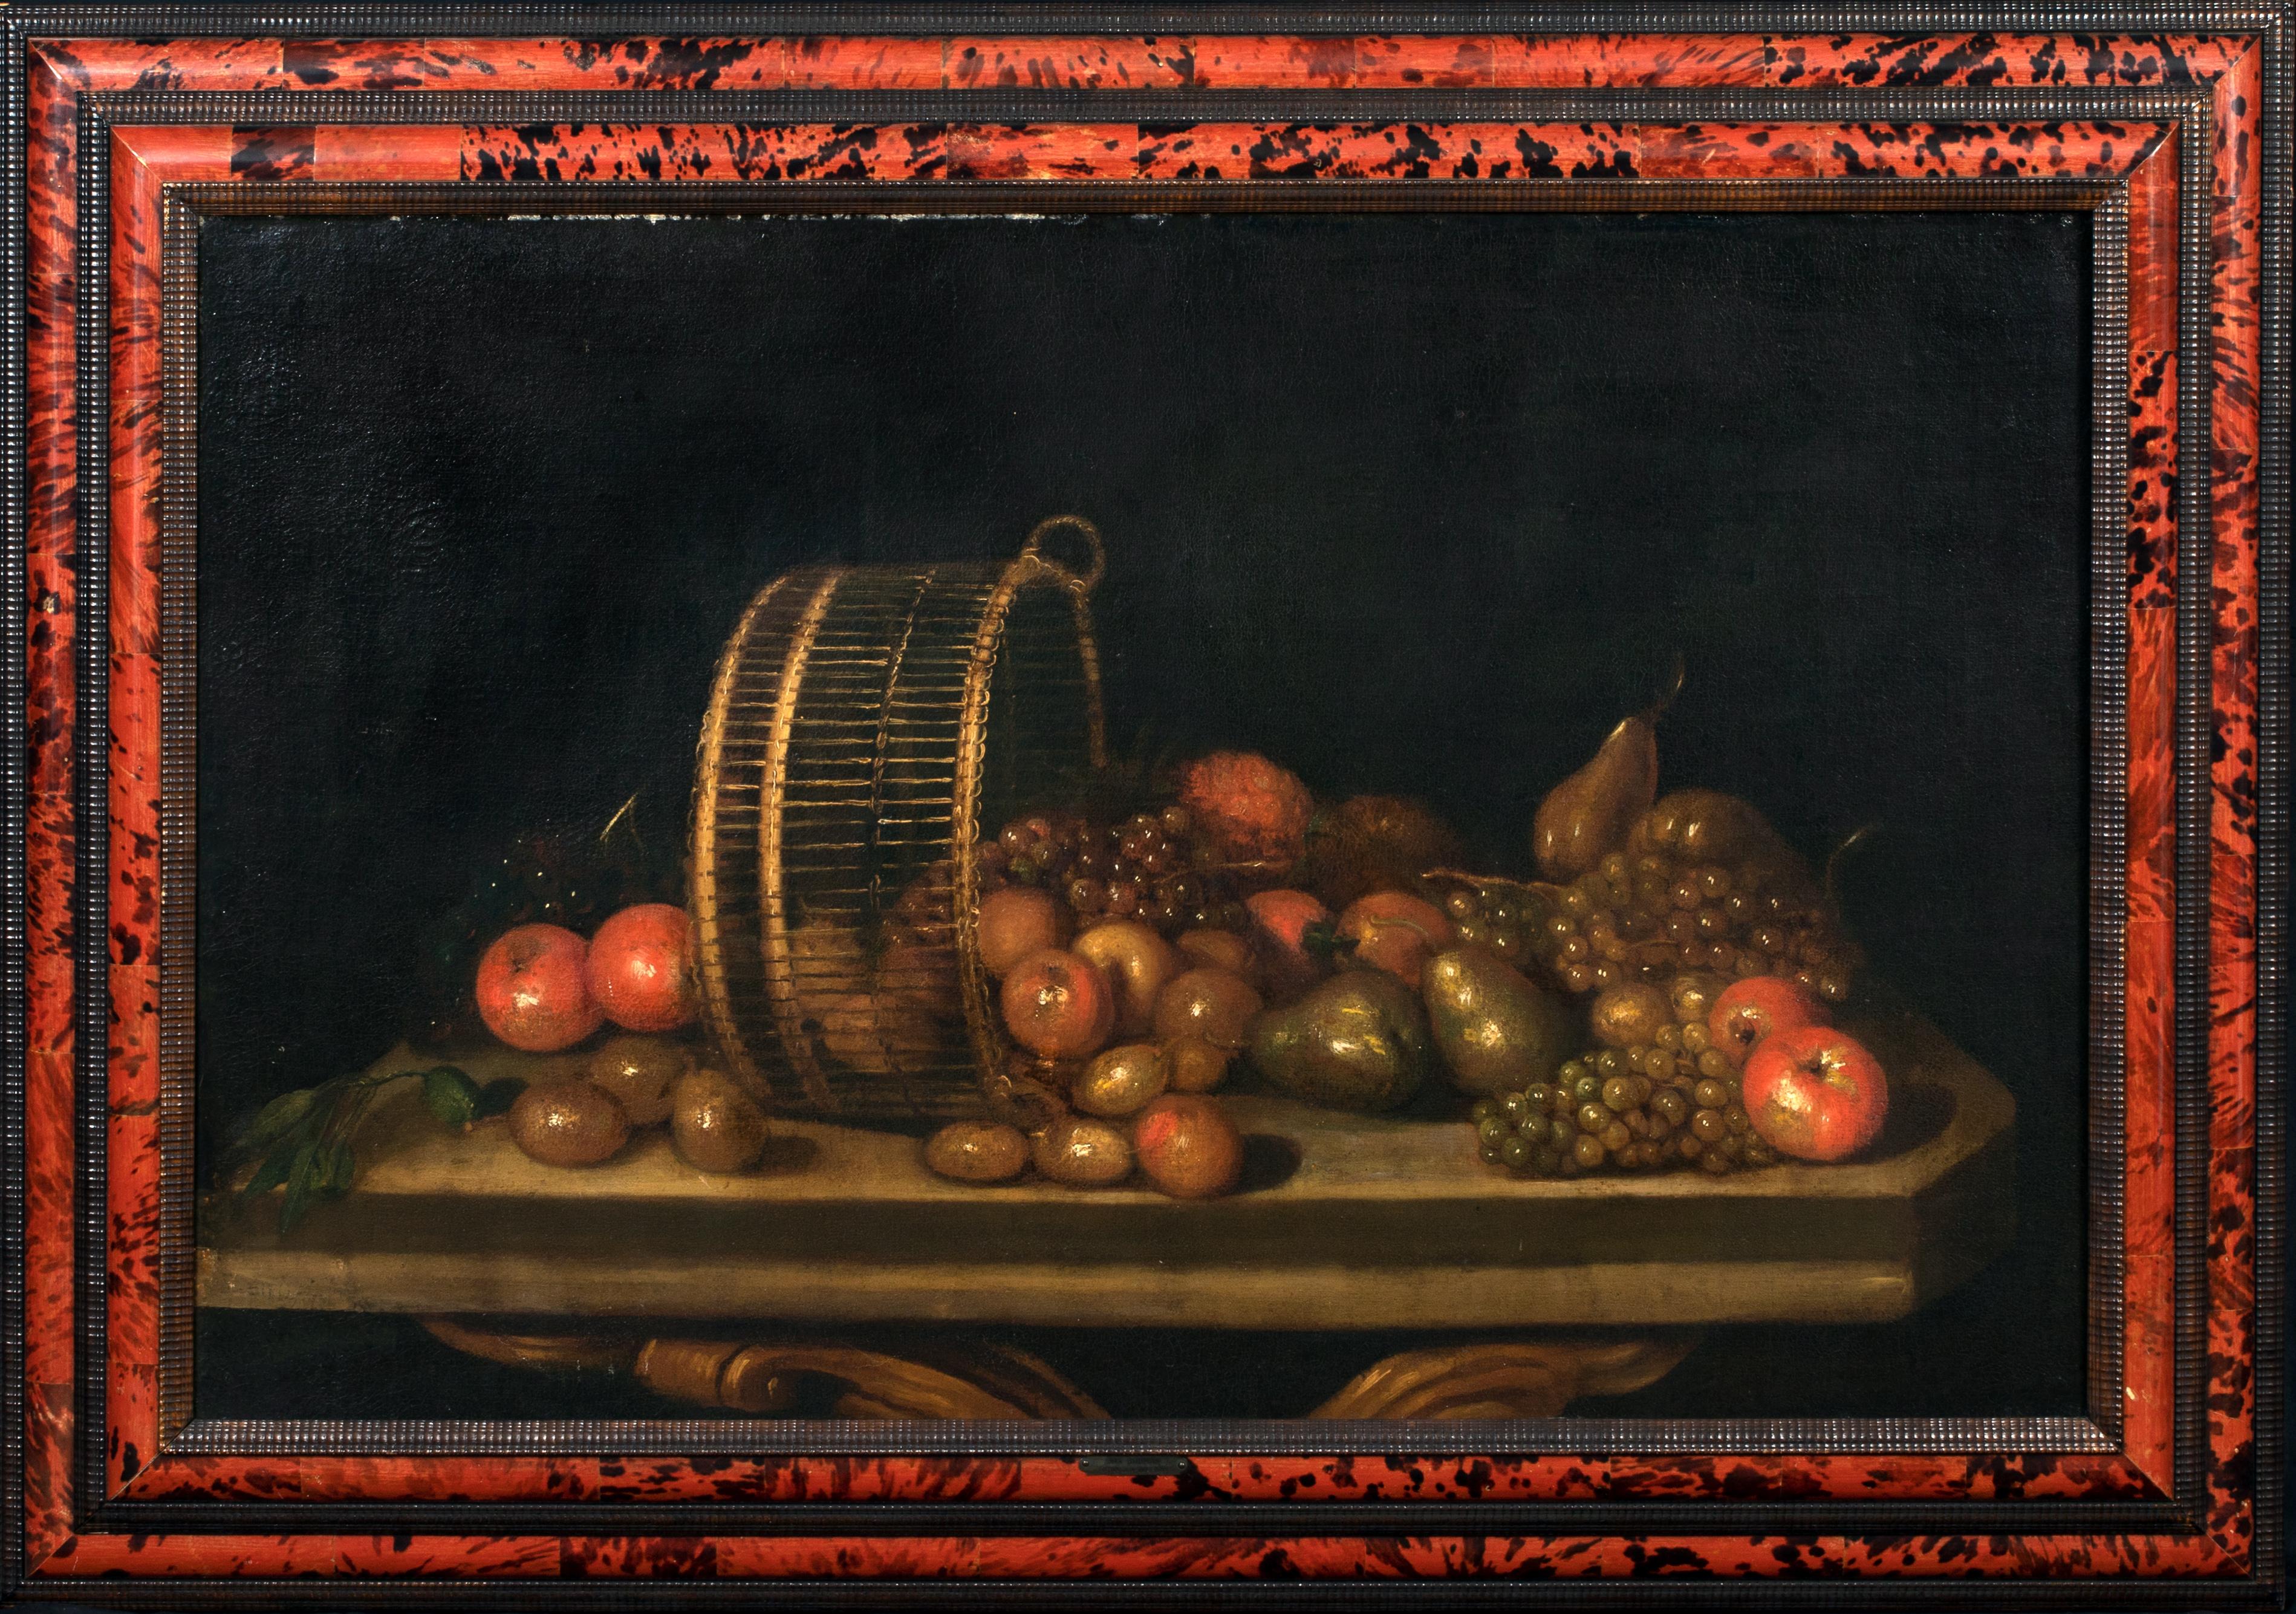 Stilleben mit Birnen, Äpfeln und Trauben in einem umgedrehten Korb, 17. Jahrhundert  – Painting von Unknown